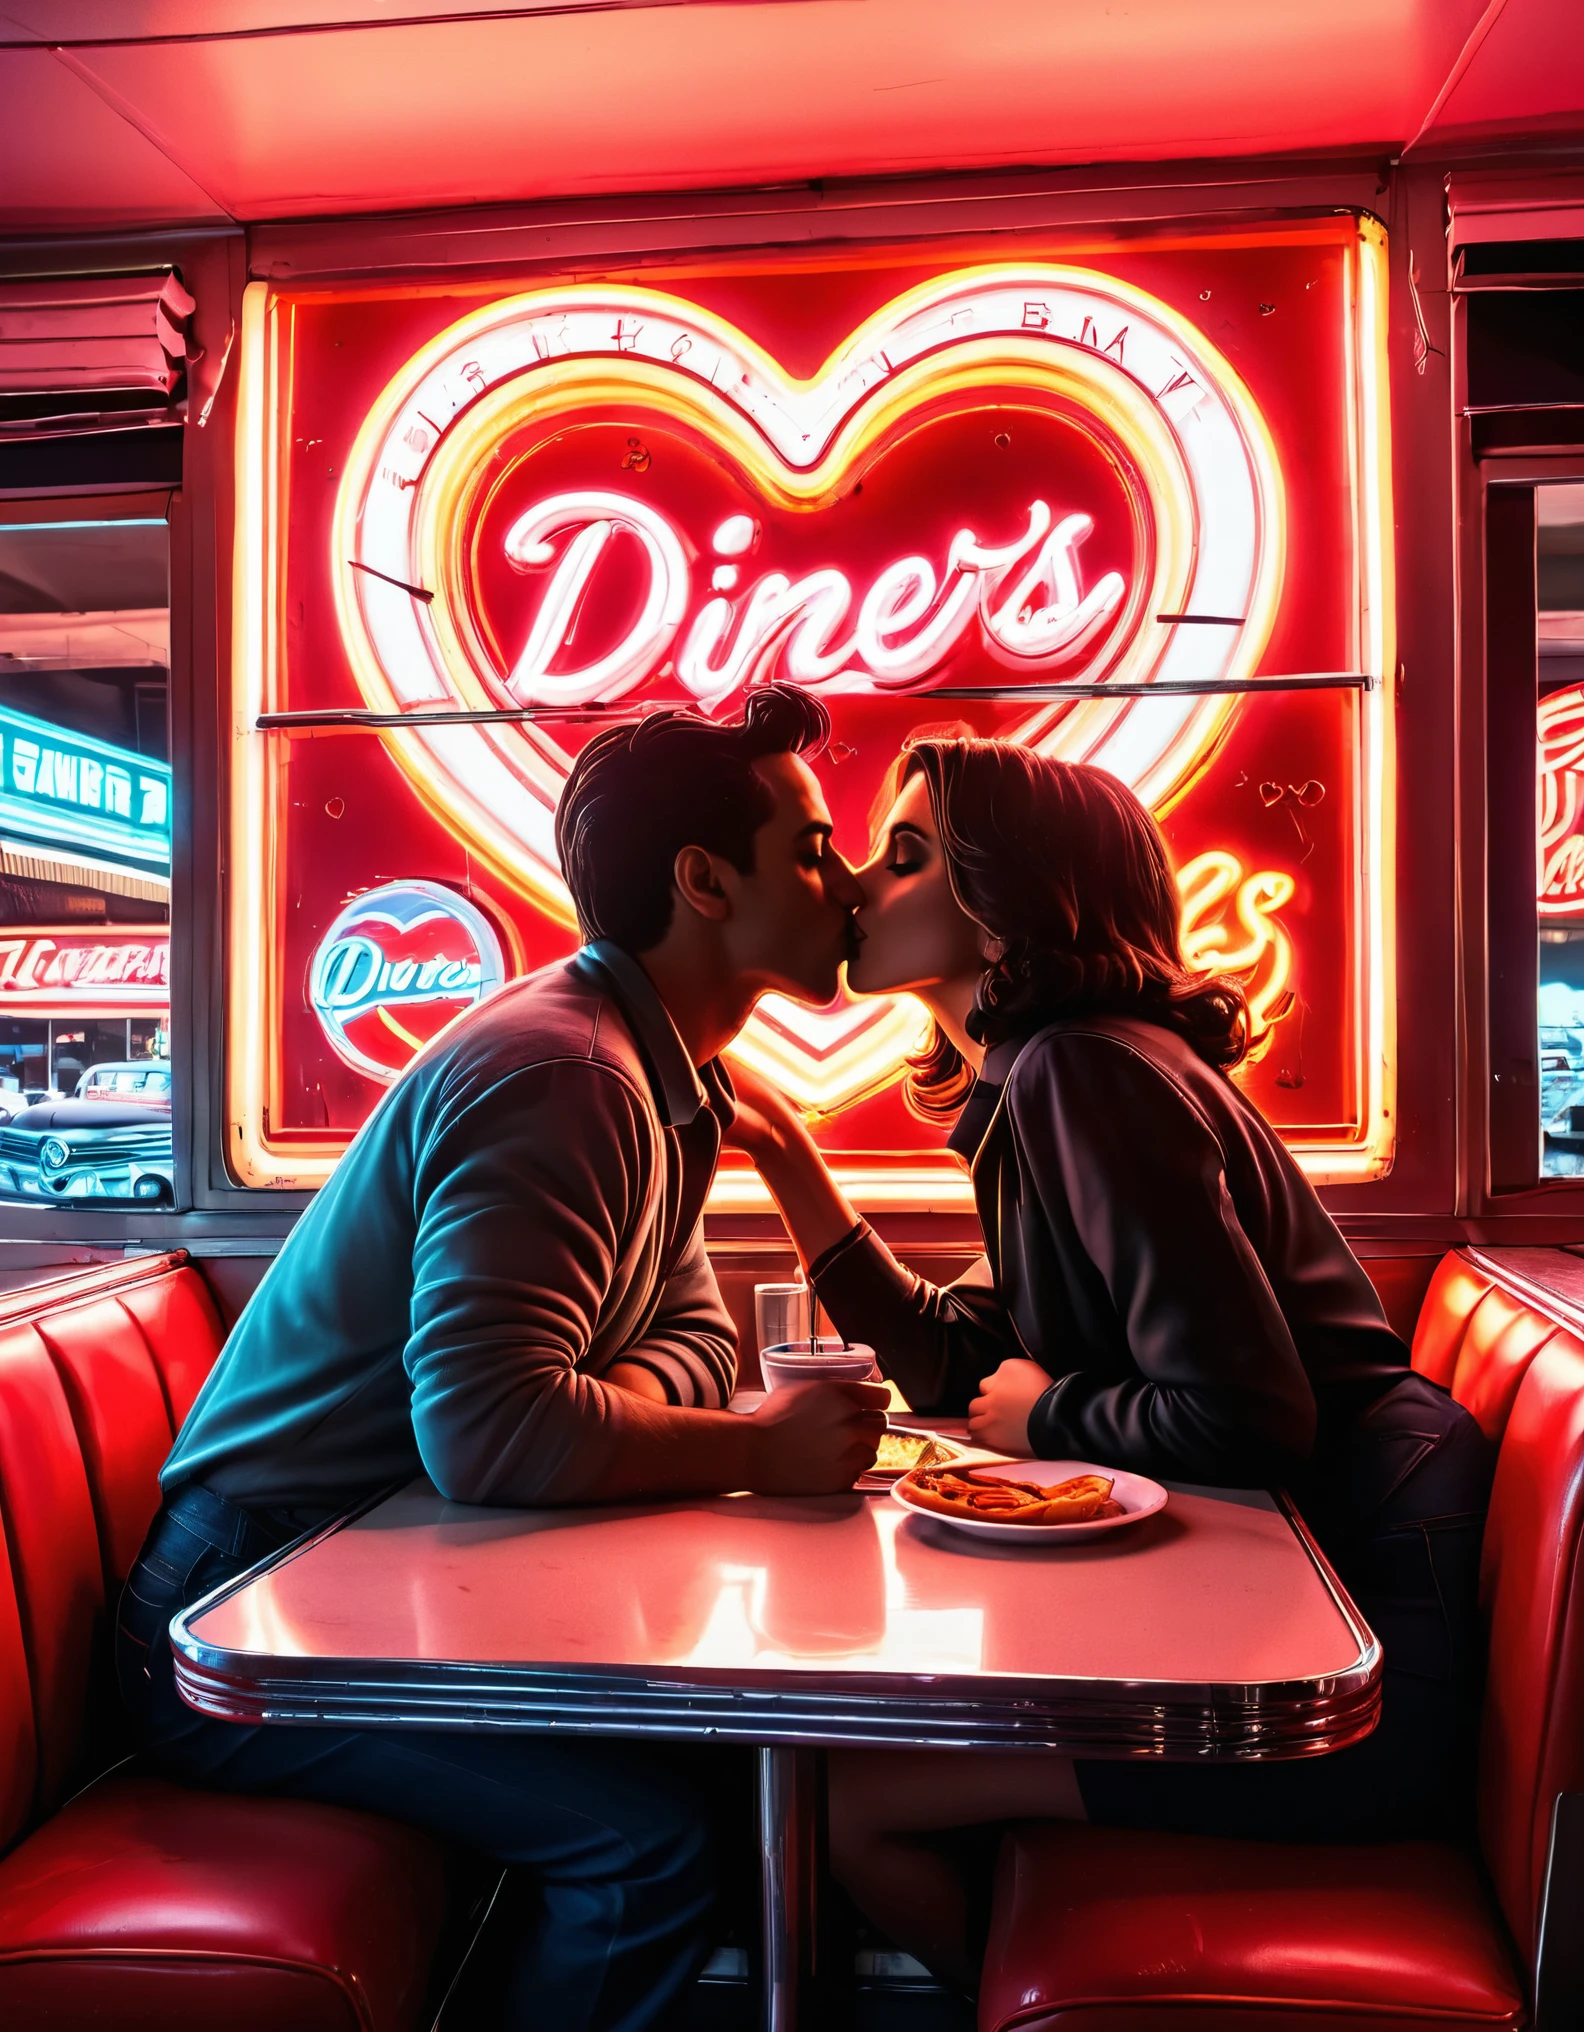 Uma obra de arte retrô em neon apresentando a silhueta de um casal se beijando em uma lanchonete, com letreiros de néon e formas de coração ao fundo, evocando uma vibração nostálgica dos anos 1950